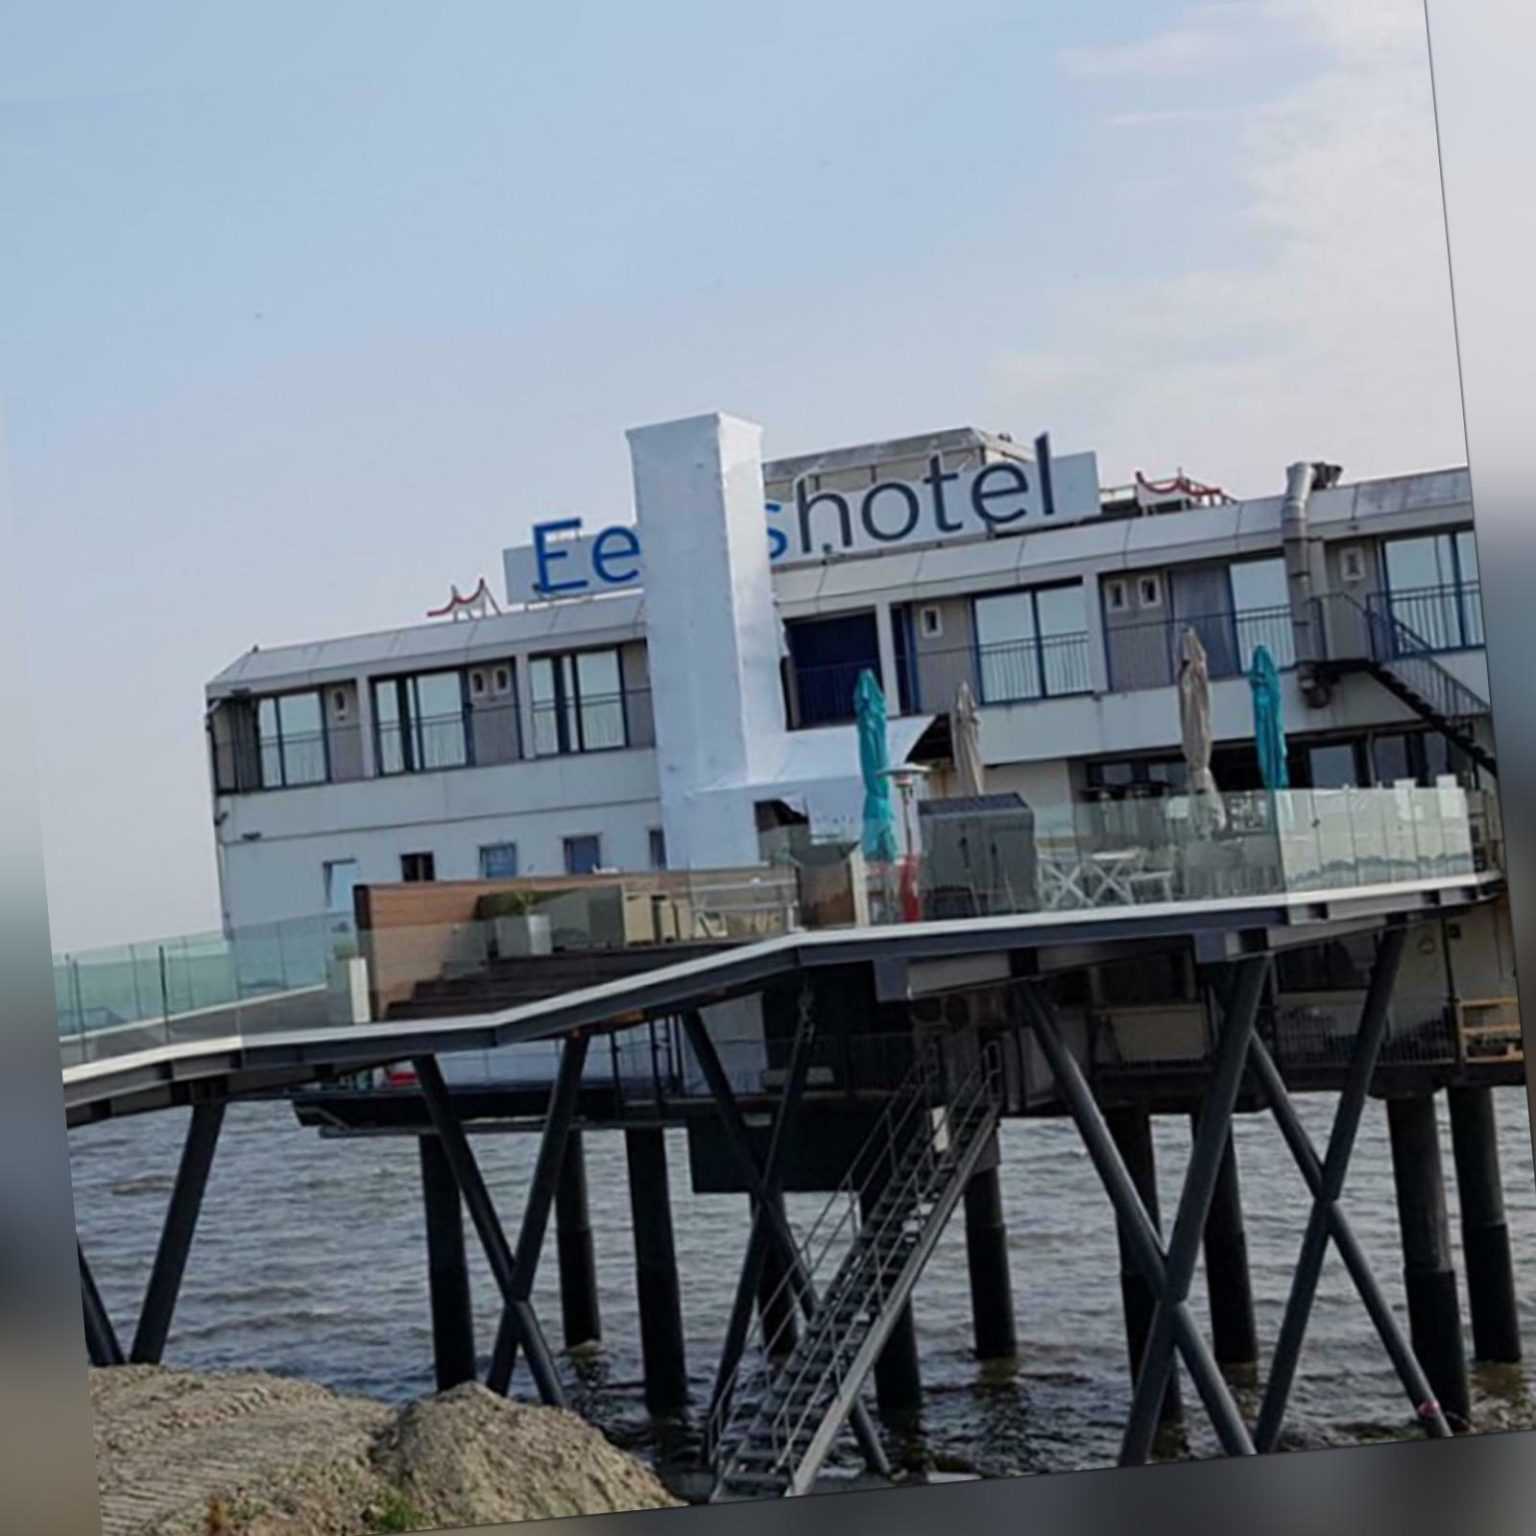 Nordsee Groningen Holland Hotel im Meer auf Stelzen Gutschein 2 Pers. 3 Nächte